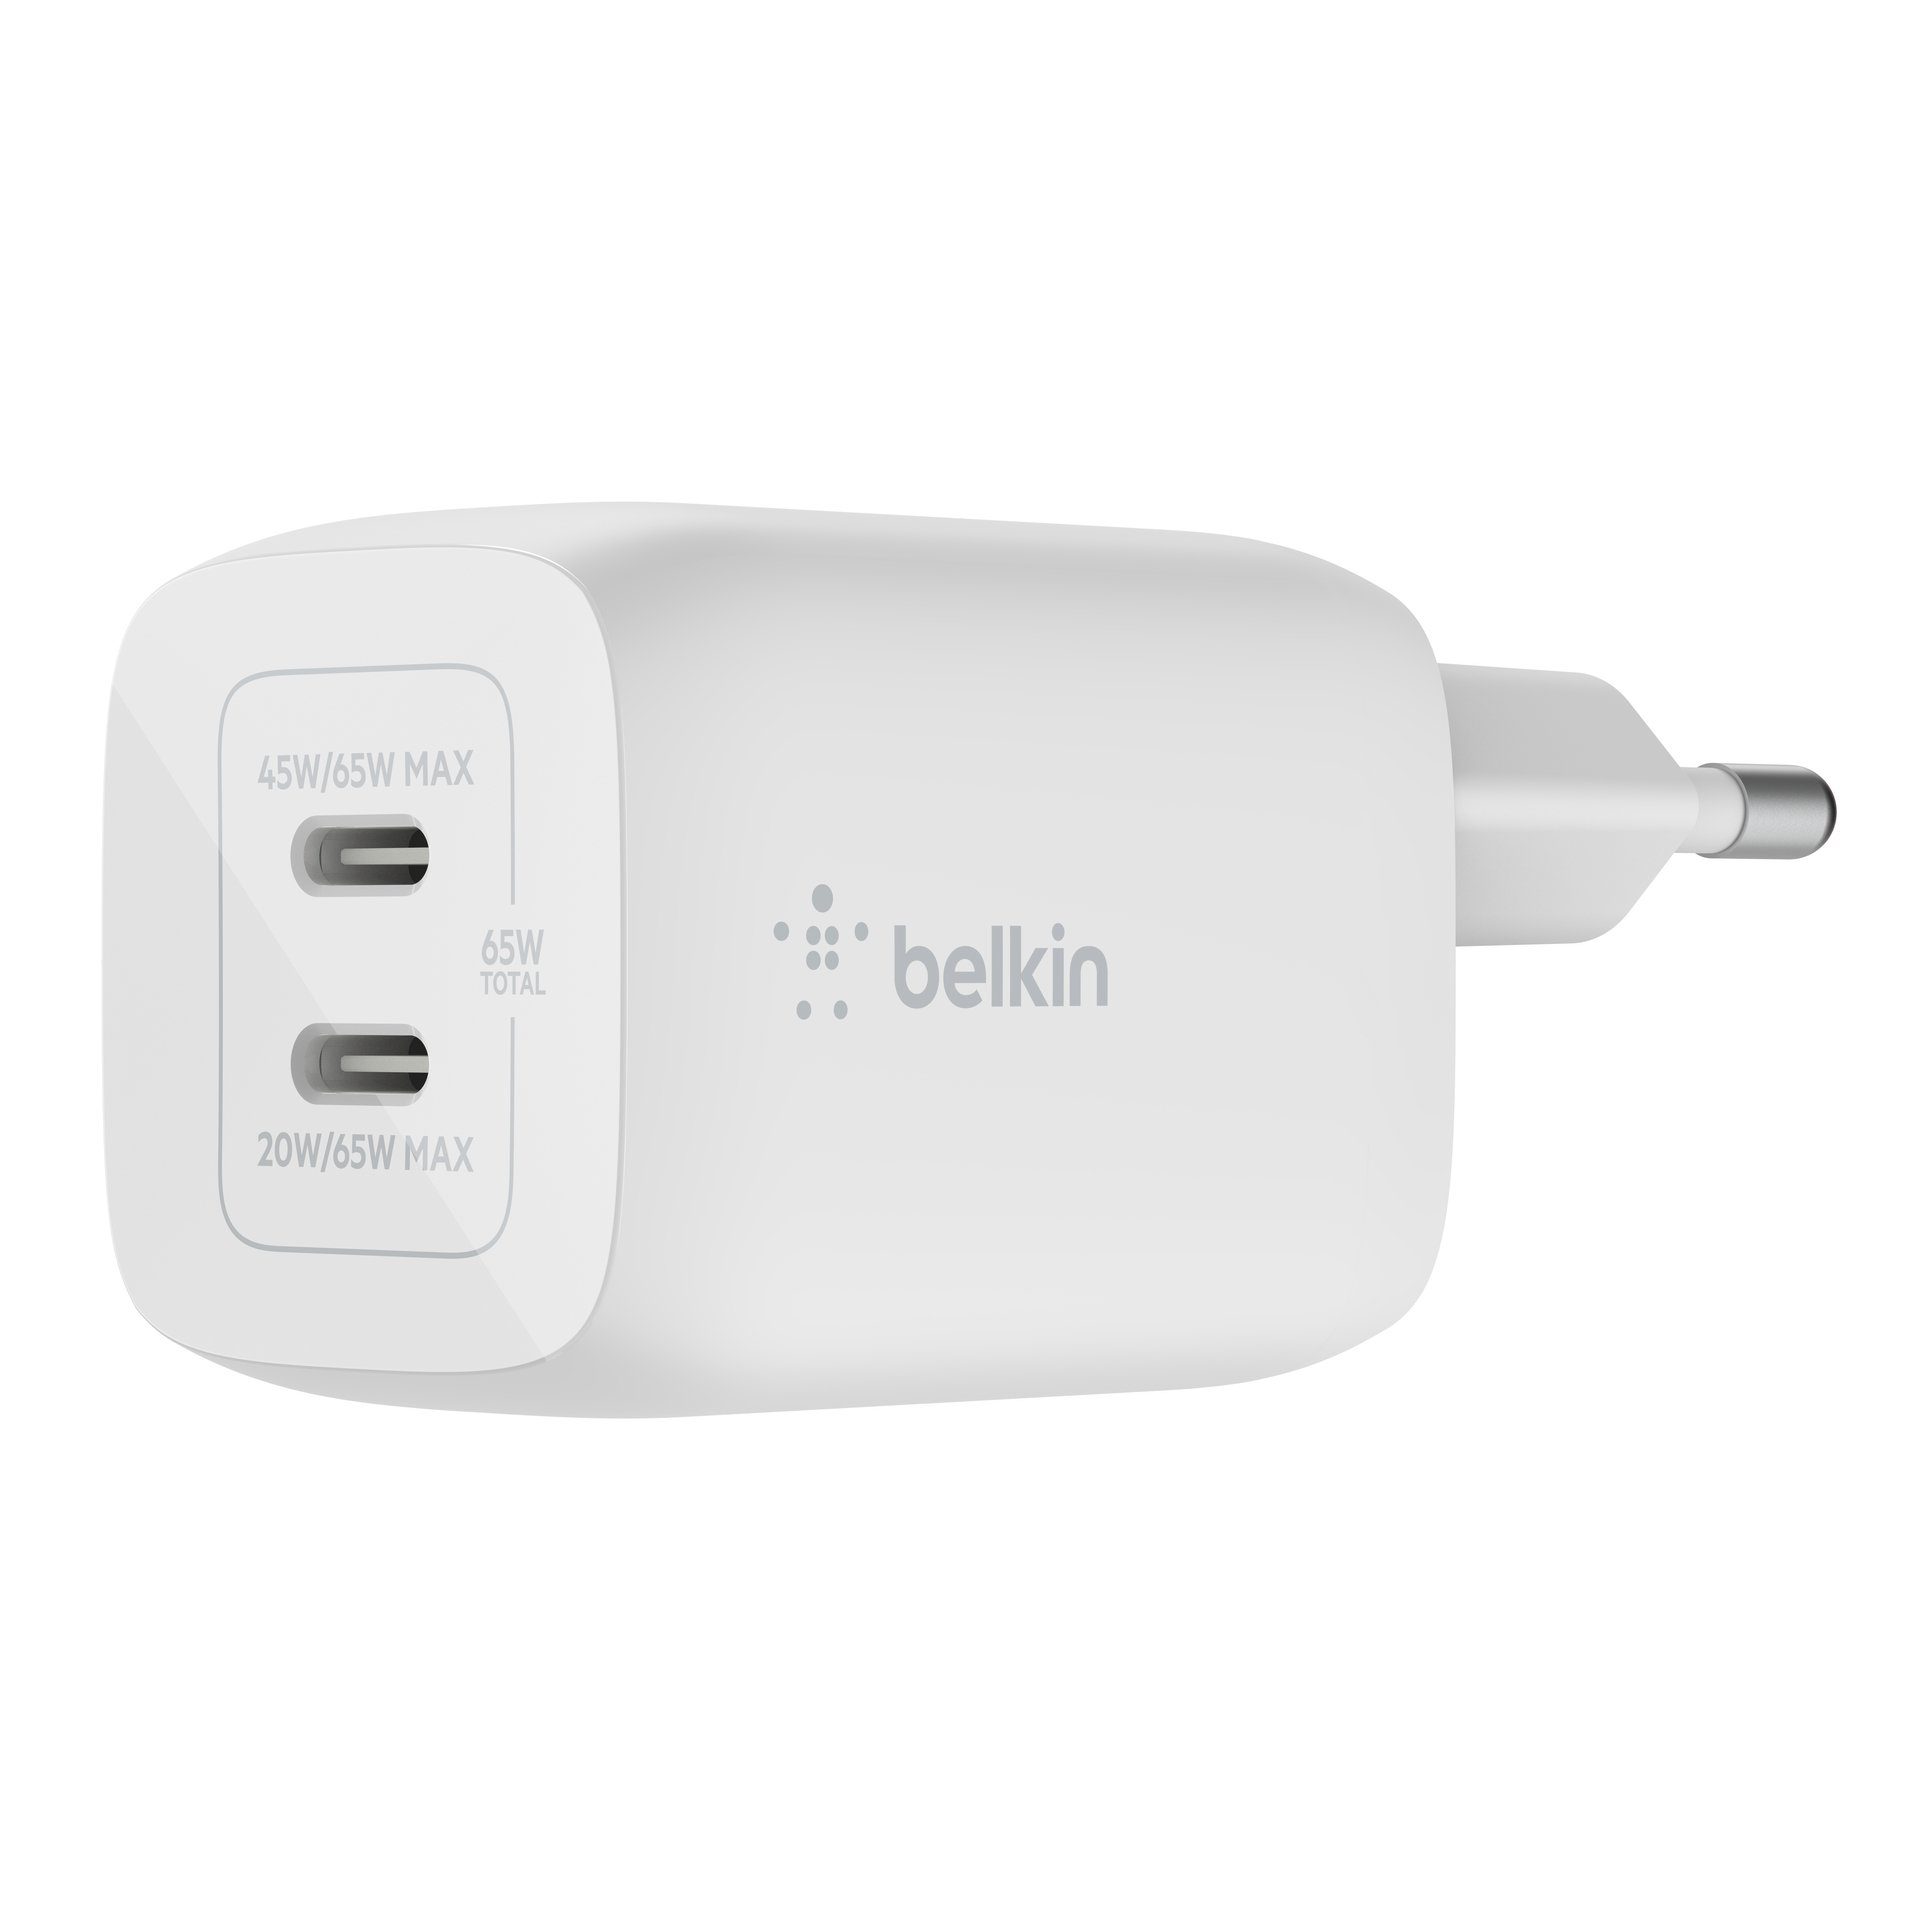 Belkin 65W Dual USB-C GaN Ladegerät mit Power Deliver und PPS USB-Ladegerät  (für Apple iPhone Samsung Galaxy Google Pixel)